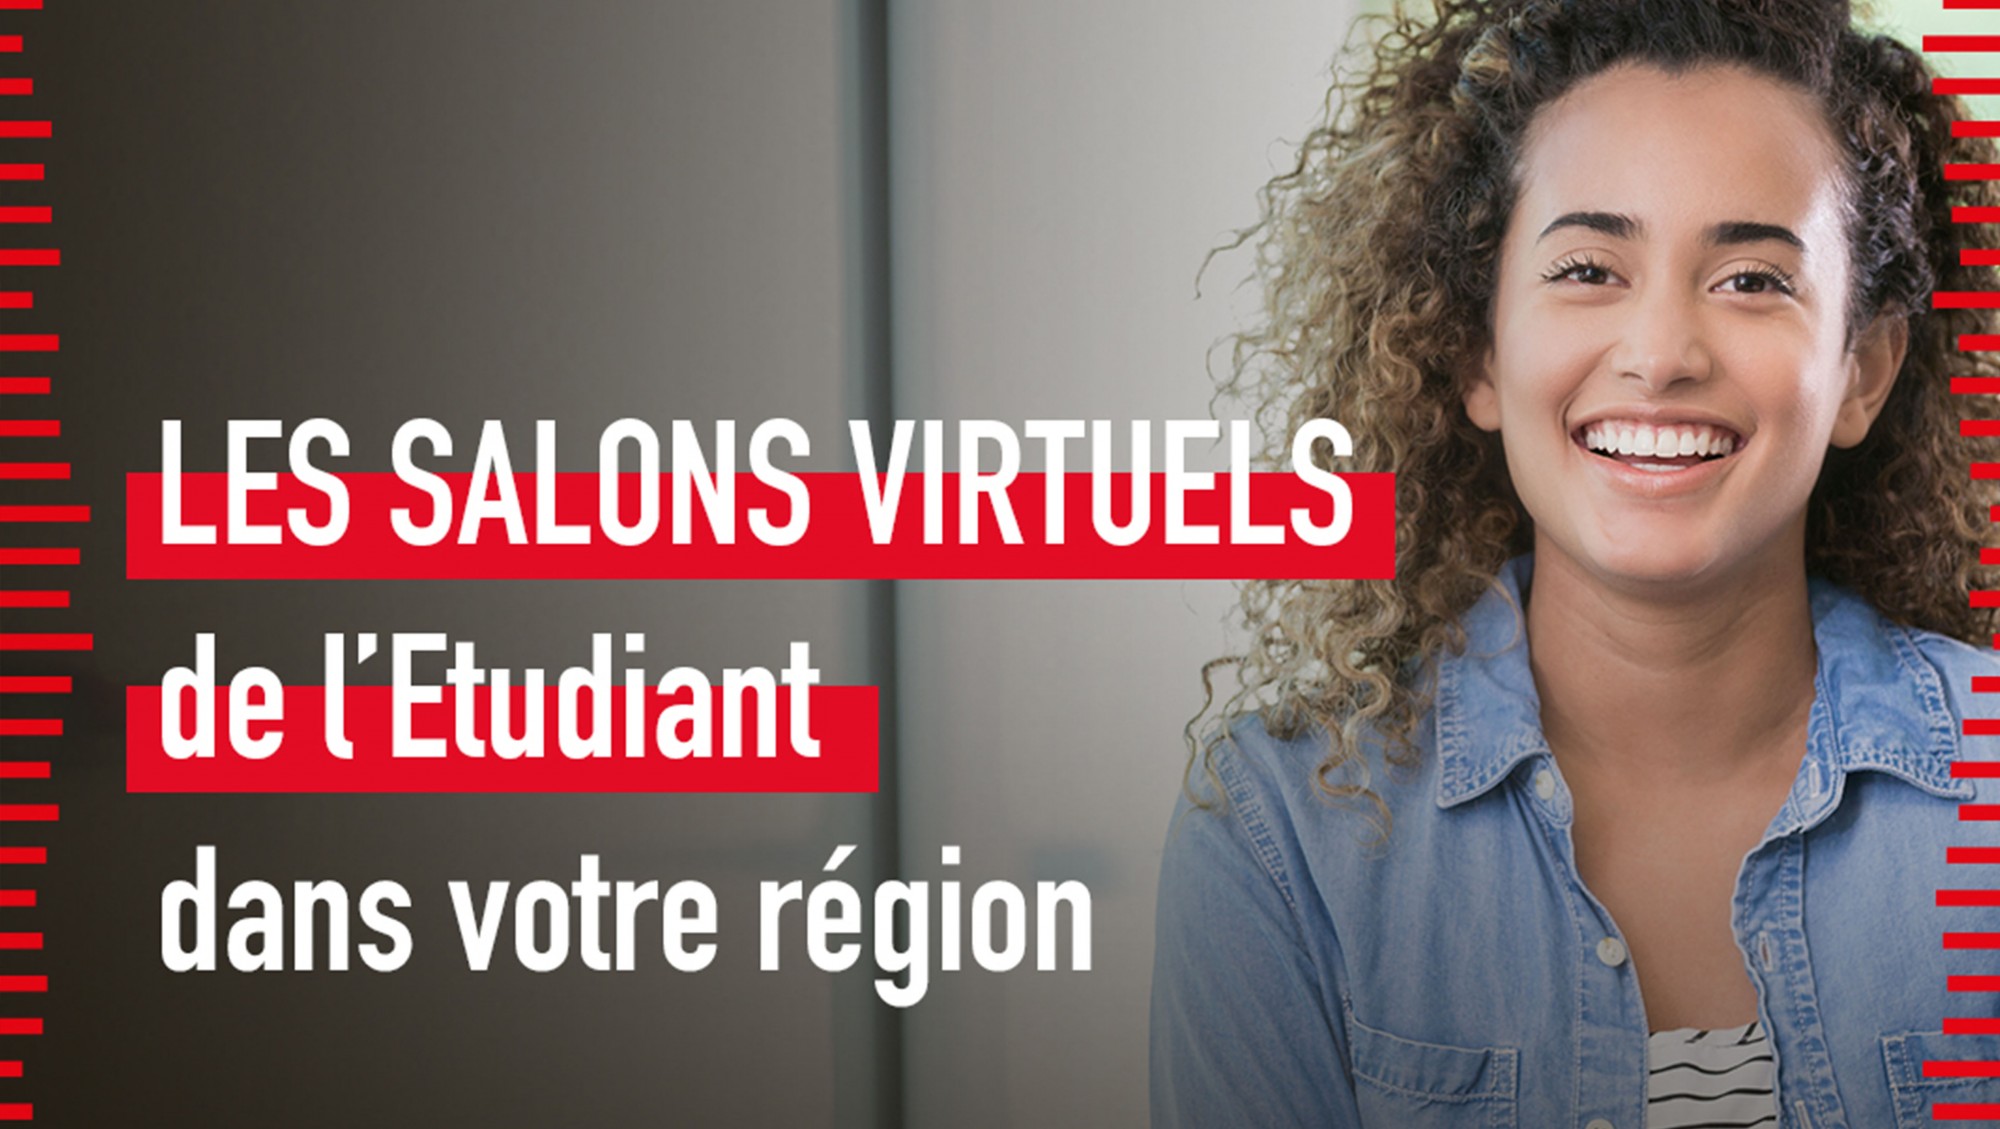 Salon virtuel de l'Étudiant en Pays de la Loire jusqu'au 28 mars 2021